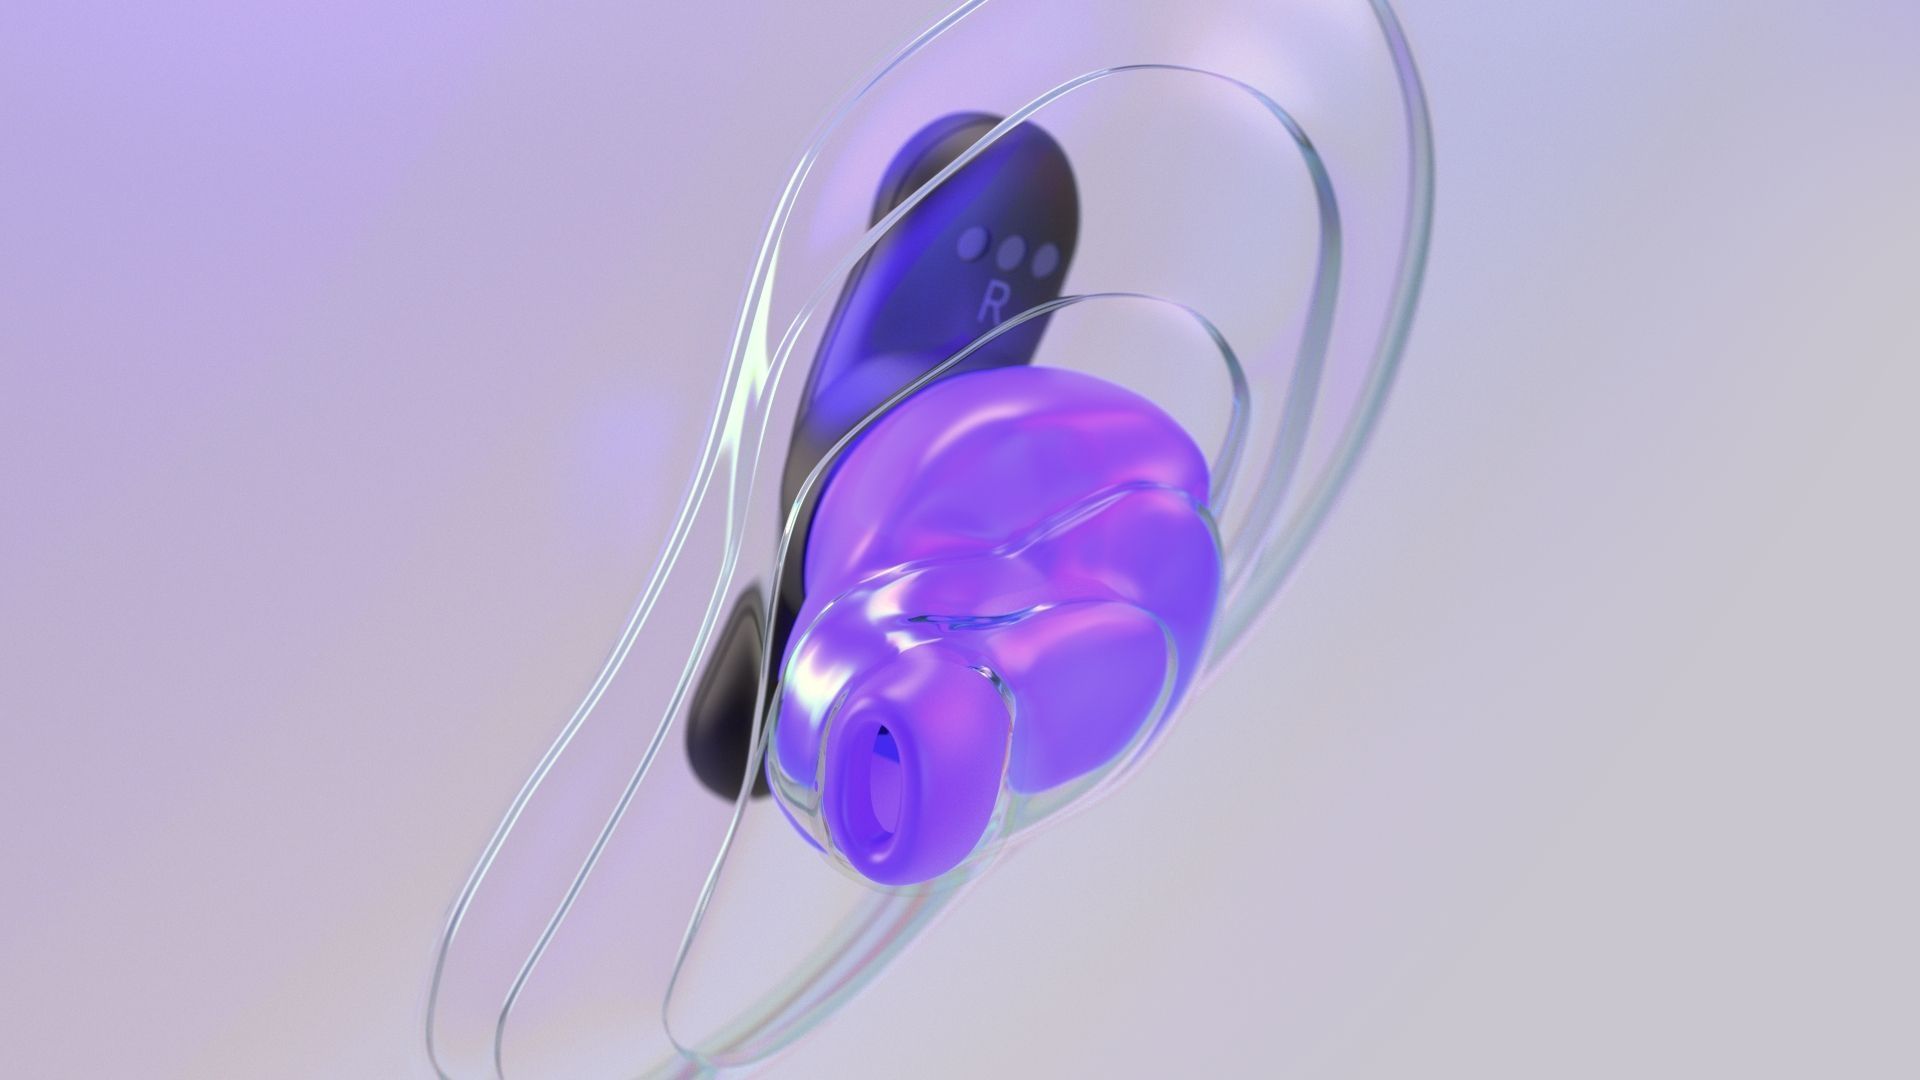 Ultimate Ears lance les Fits aux États-Unis, des écouteurs qui prennent la forme des oreilles de leurs utilisateurs.